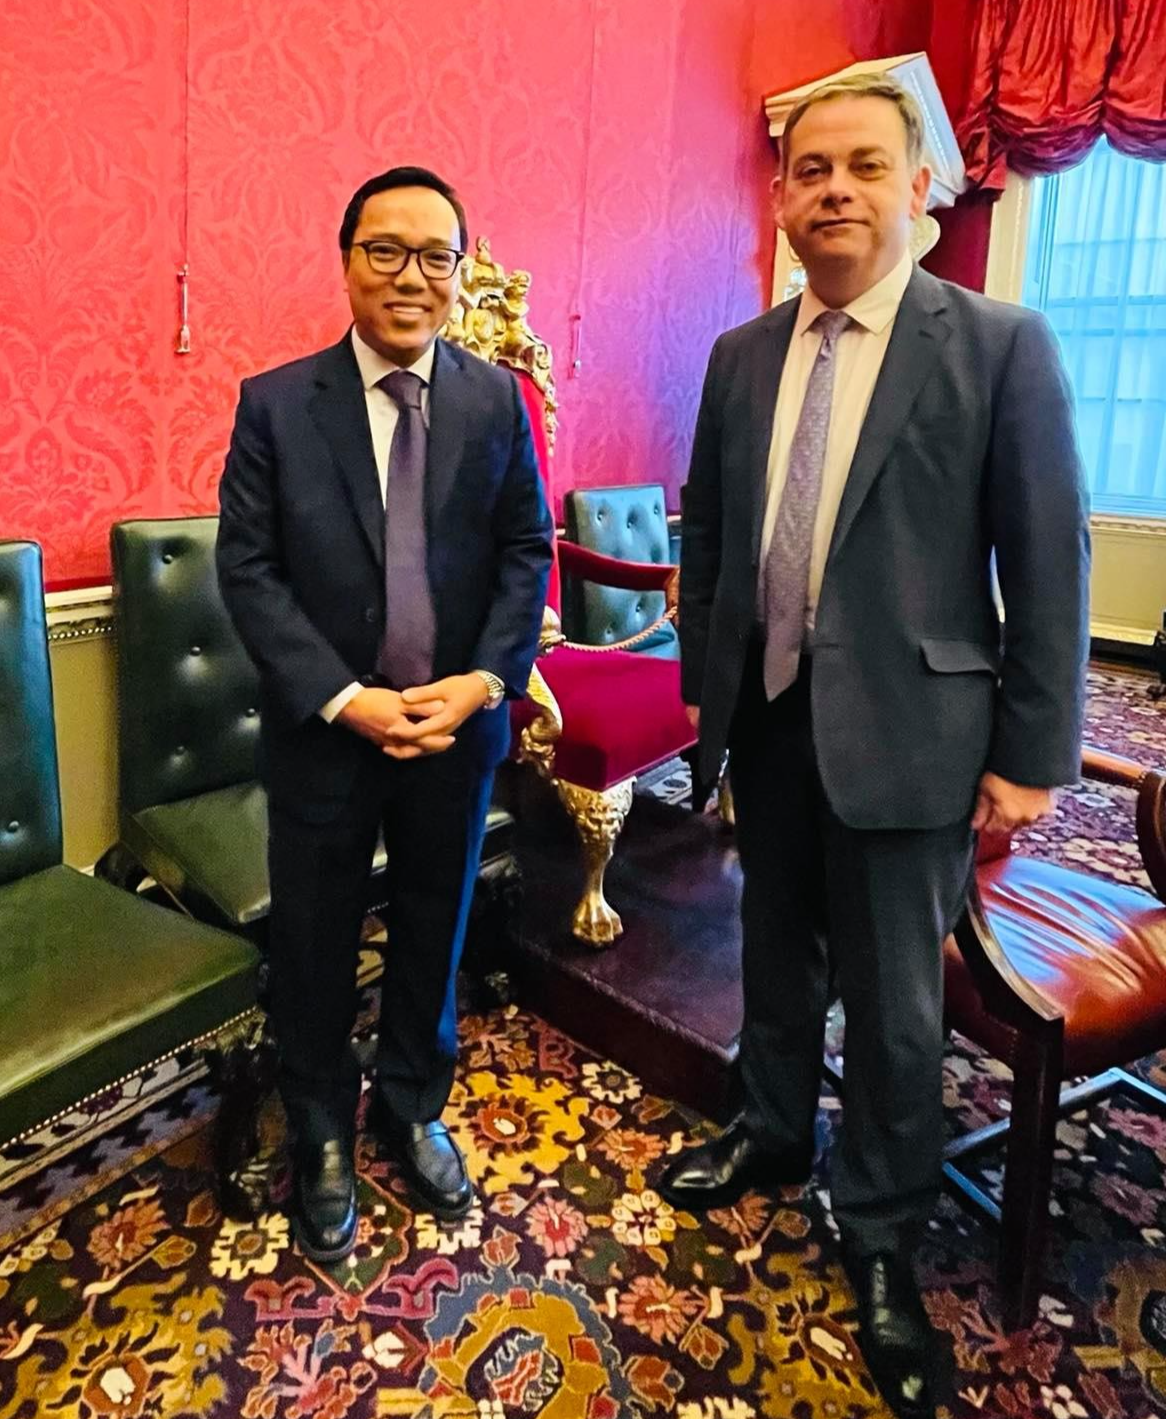 Đại sứ Nguyễn Hoàng Long gặp ông Nigel Adams, Bộ trưởng, Văn phòng Nội các Anh, chuẩn bị cho chuyến thăm làm việc của Thủ tướng Phạm Minh Chính tại VQ Anh và dự Hội nghị Cop26.